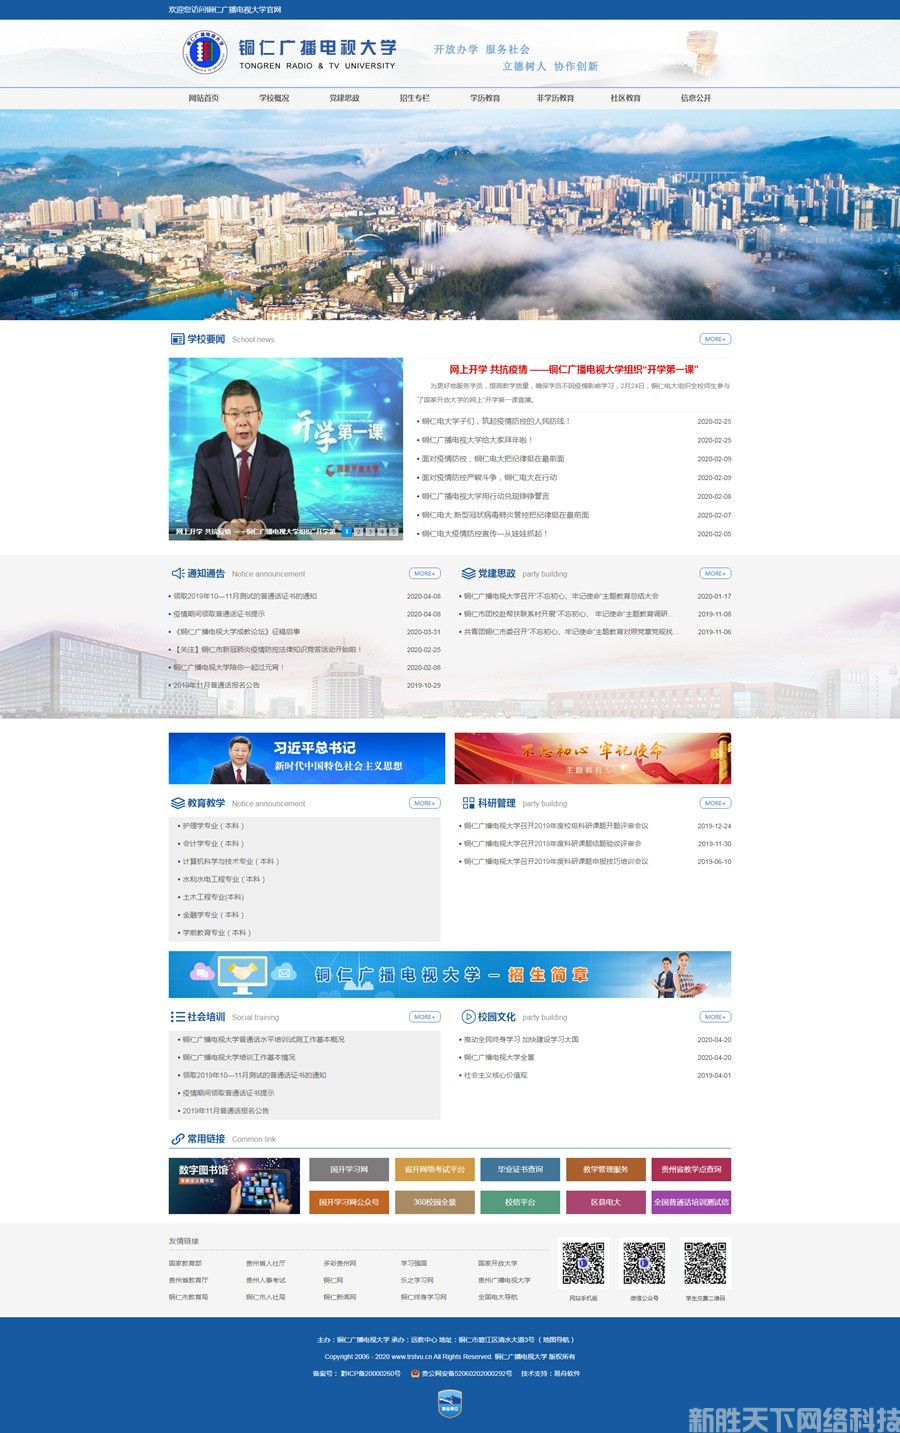 网站建设案例展示——【铜仁广播电视大学】(图1)